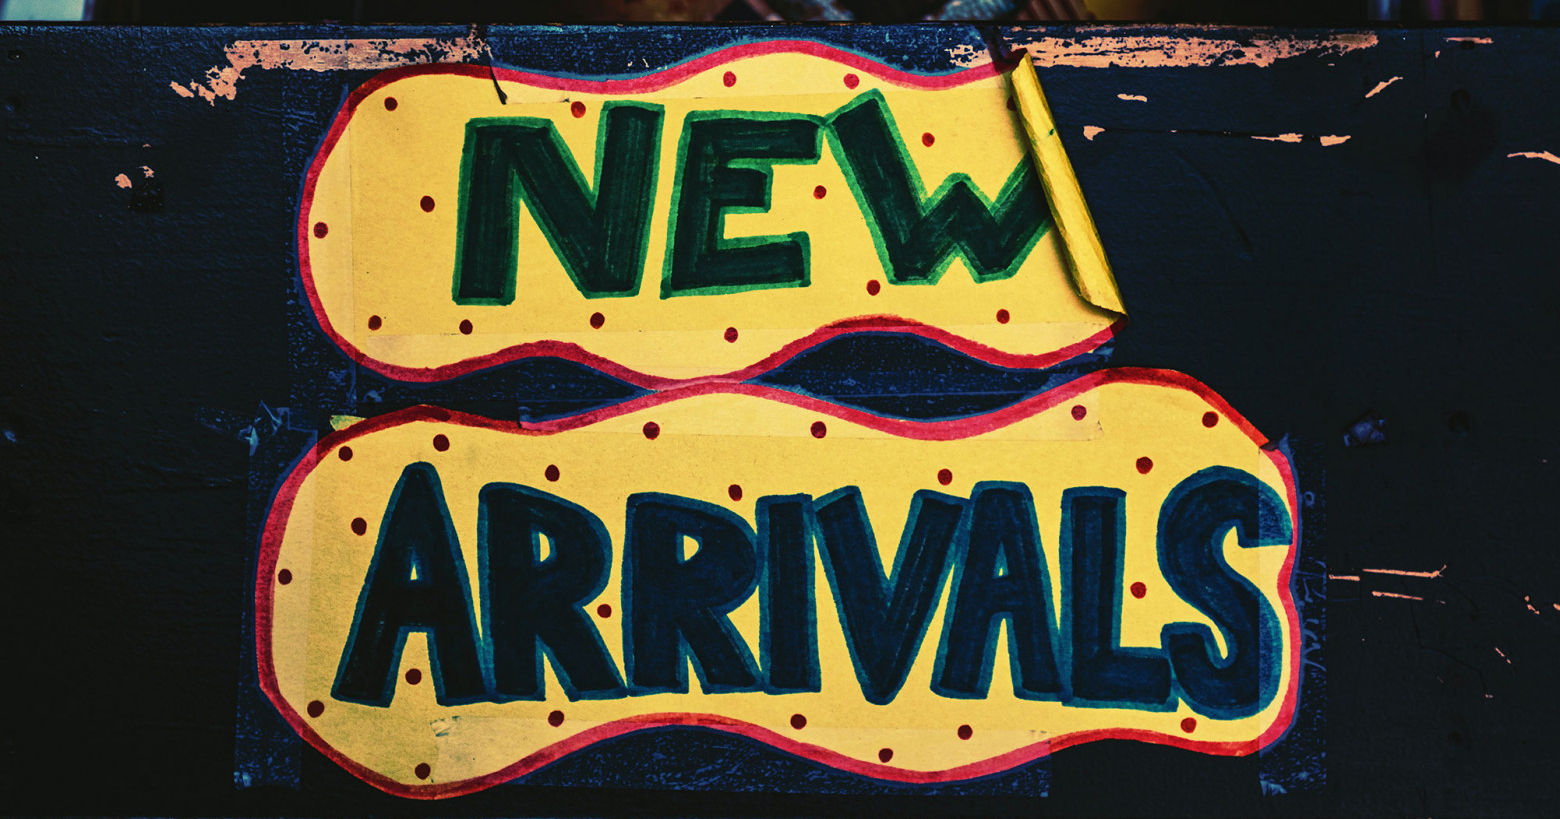 Деревянный бокс с только поступившими в продажу виниловыми пластинками, обозначенный стикером «NEW ARRIVALS»